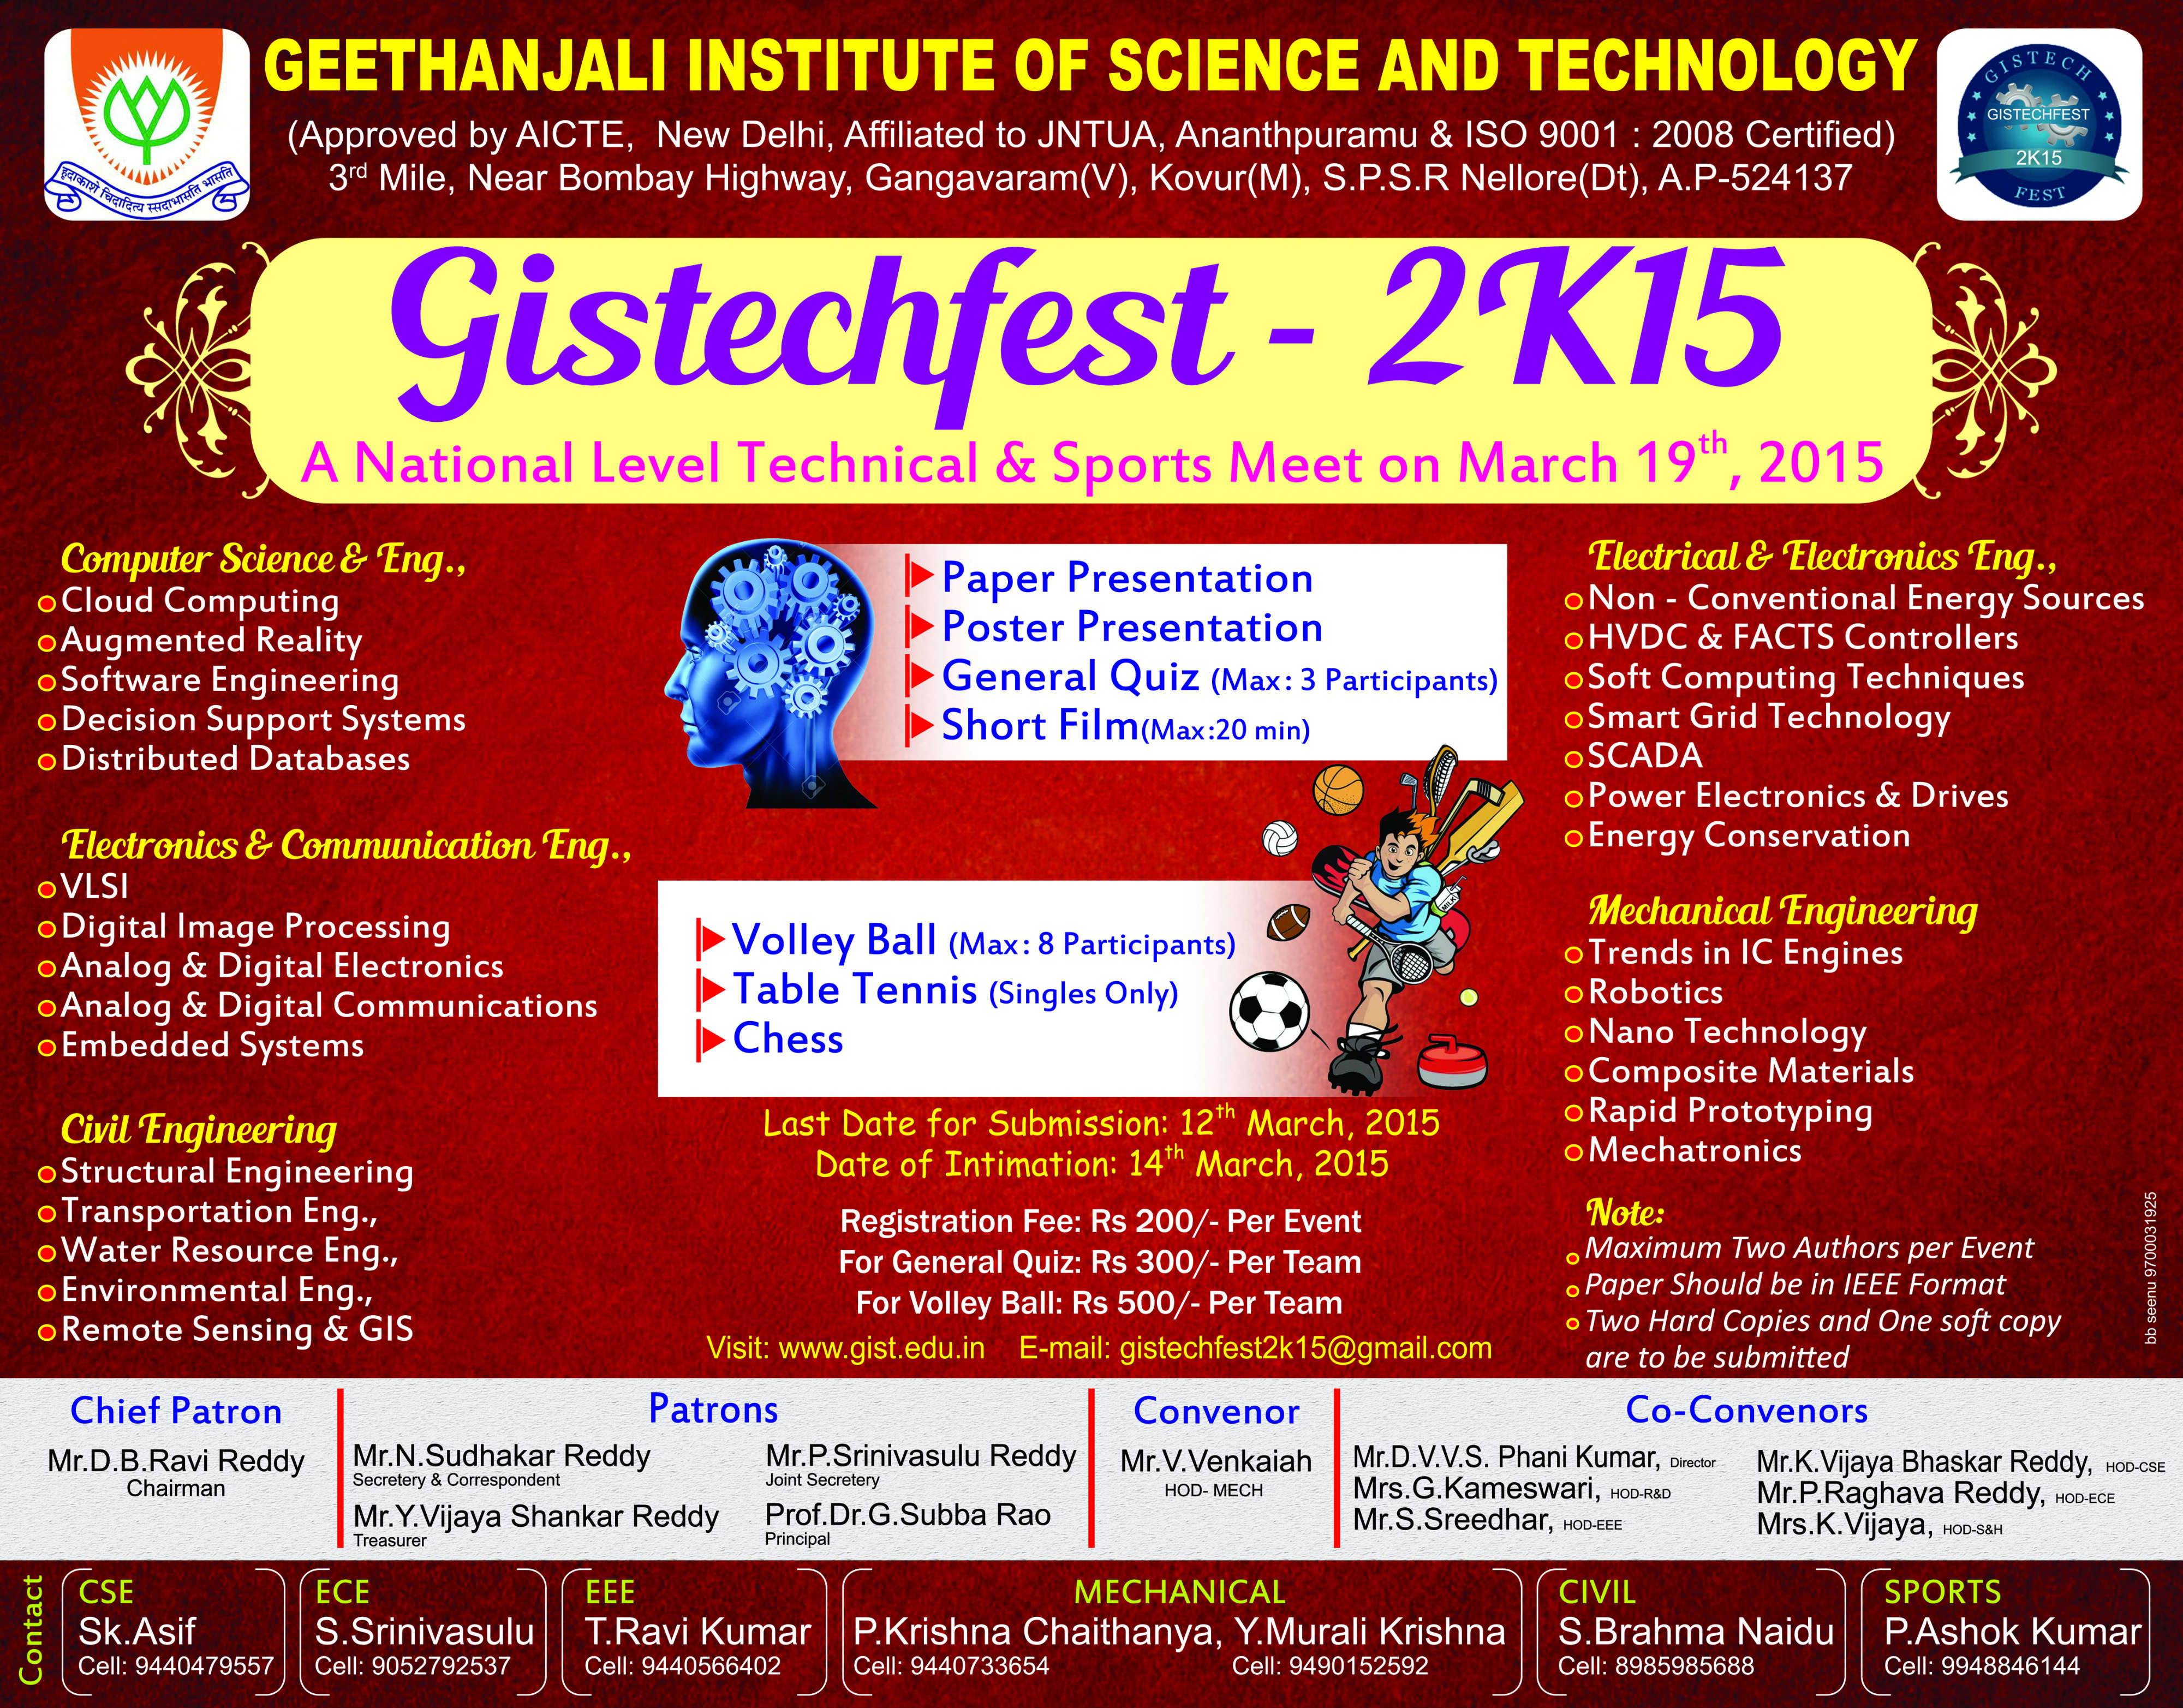 GISTECHFEST-2K15